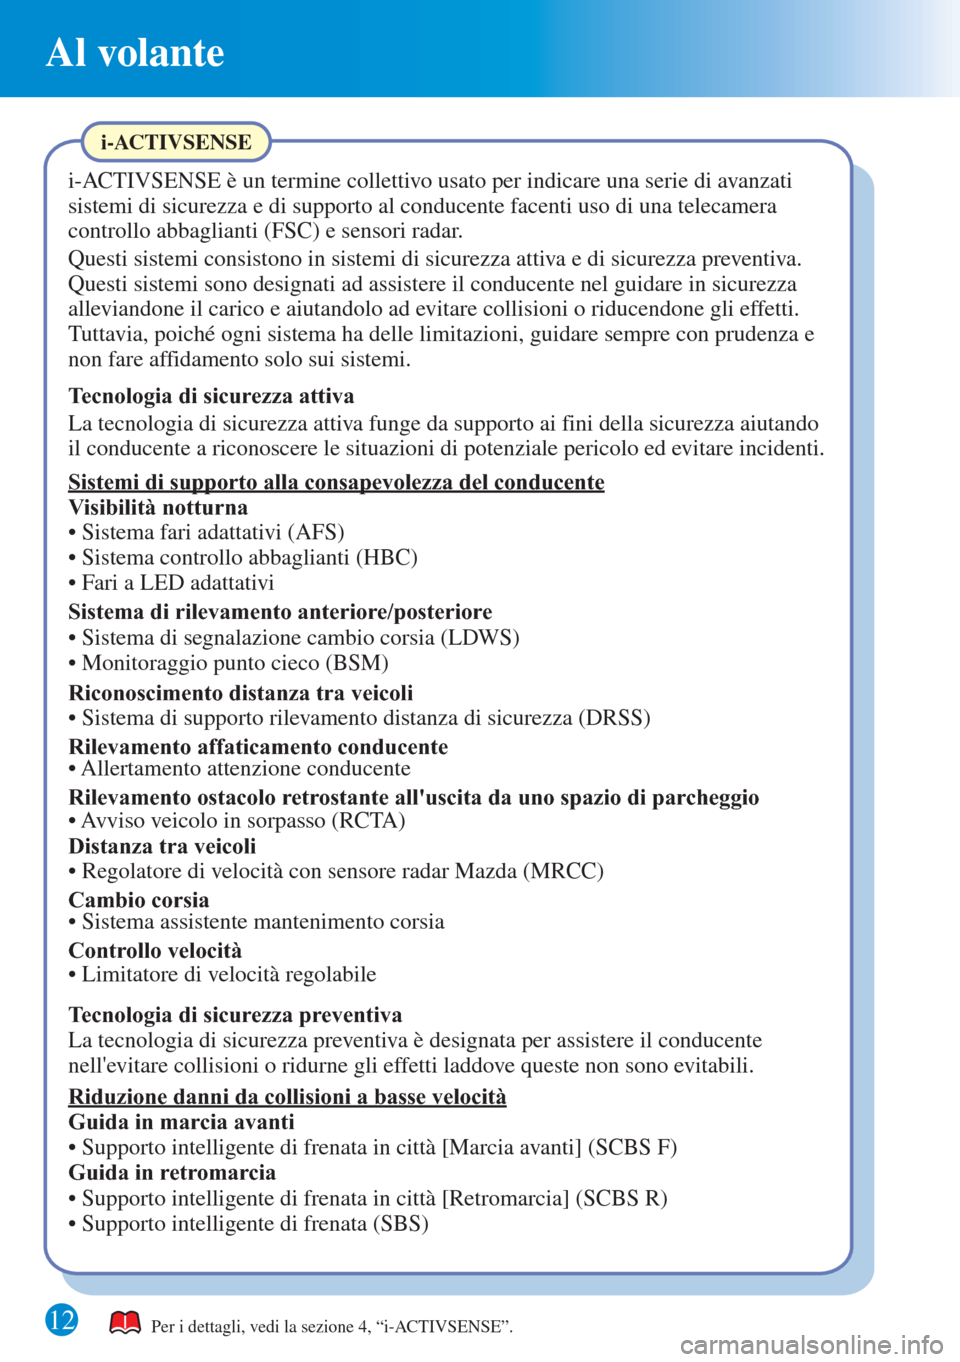 MAZDA MODEL 6 2015  Guida Rapida (in Italian) Al volante
12Per i dettagli, vedi la sezione 4, “i-ACTIVSENSE”.
i-ACTIVSENSE
i-ACTIVSENSE è un termine collettivo usato per indicare una serie di avanzati 
sistemi di sicurezza e di supporto al c